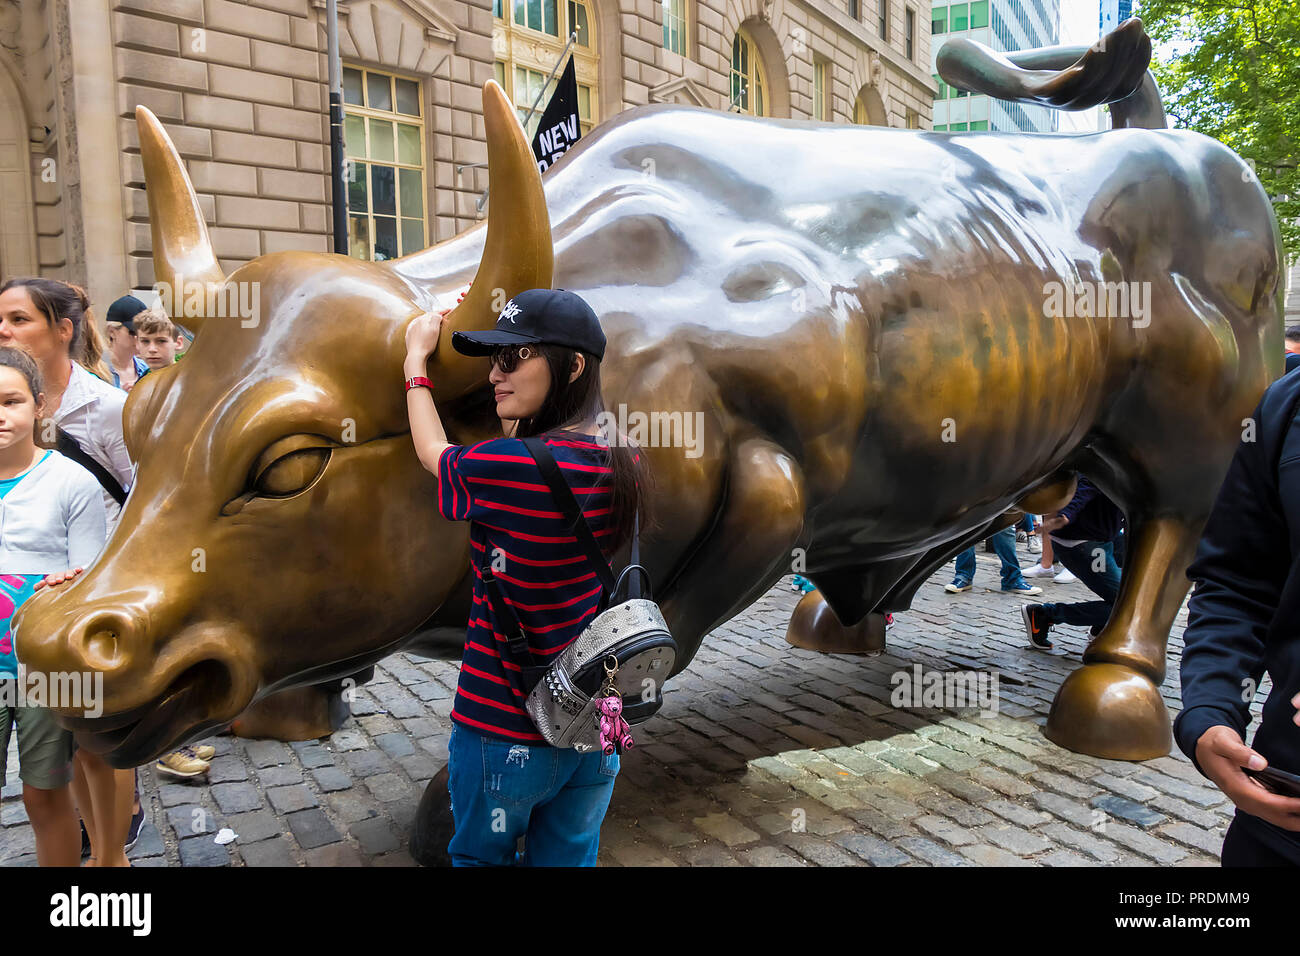 New York City, USA - Juni 8, 2017: Nicht identifizierte Frau beim Laden - Bull. Das Wahrzeichen wütenden Stier in Lower Manhattan repräsentiert die Stärke und Leistu Stockfoto